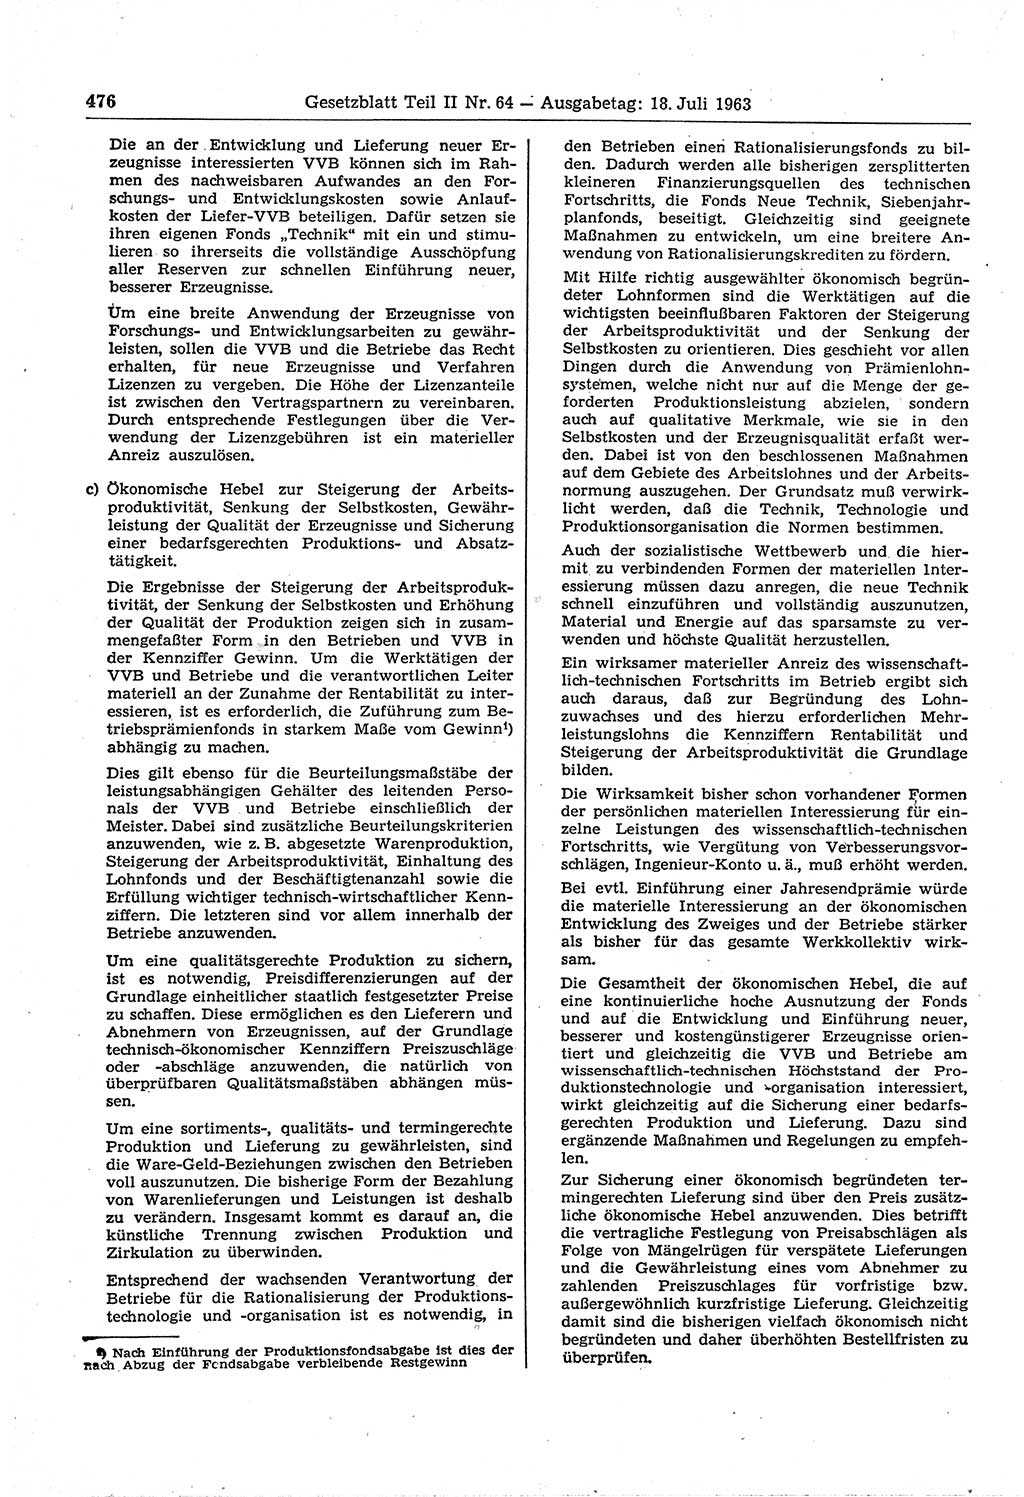 Gesetzblatt (GBl.) der Deutschen Demokratischen Republik (DDR) Teil ⅠⅠ 1963, Seite 476 (GBl. DDR ⅠⅠ 1963, S. 476)